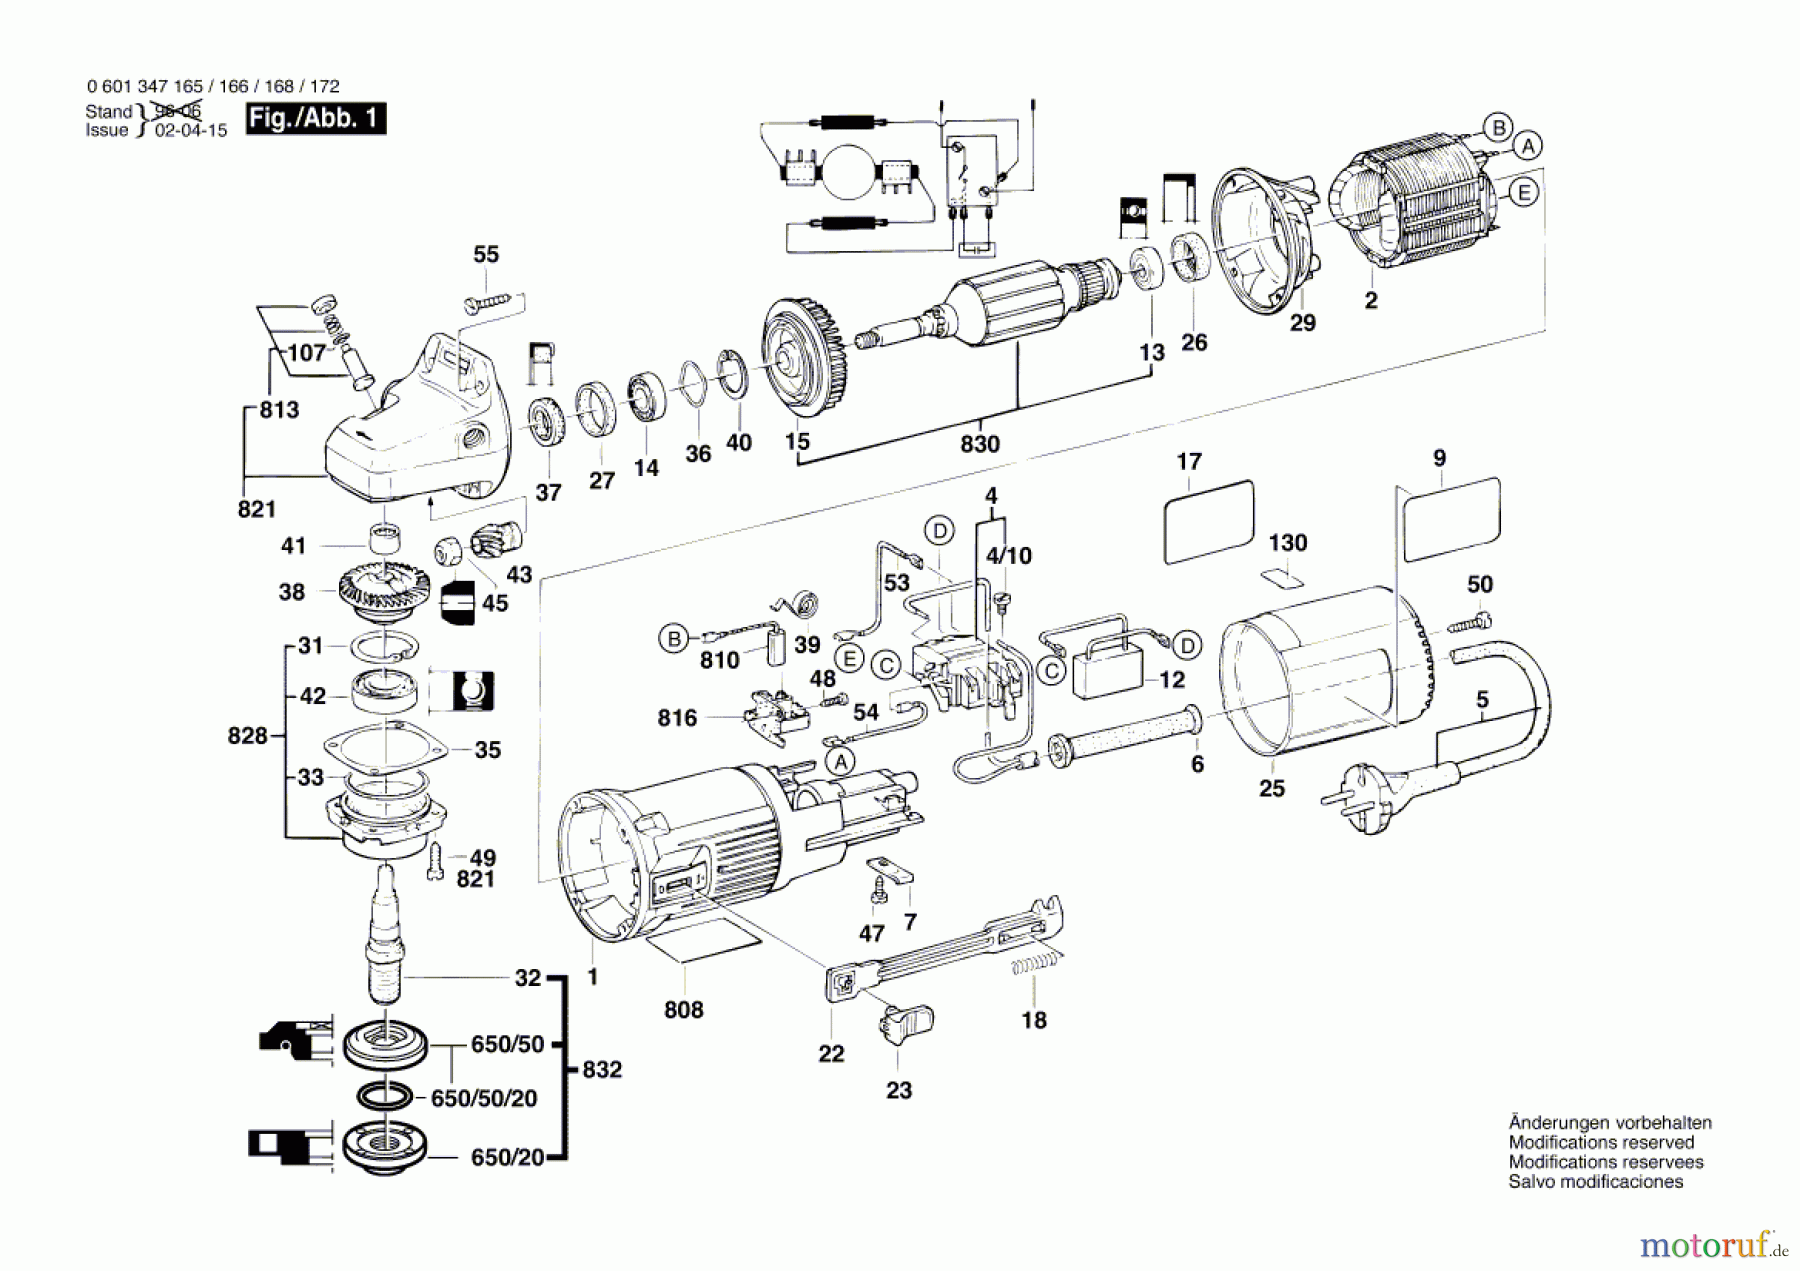  Bosch Werkzeug Winkelschleifer WS 115 S Seite 1